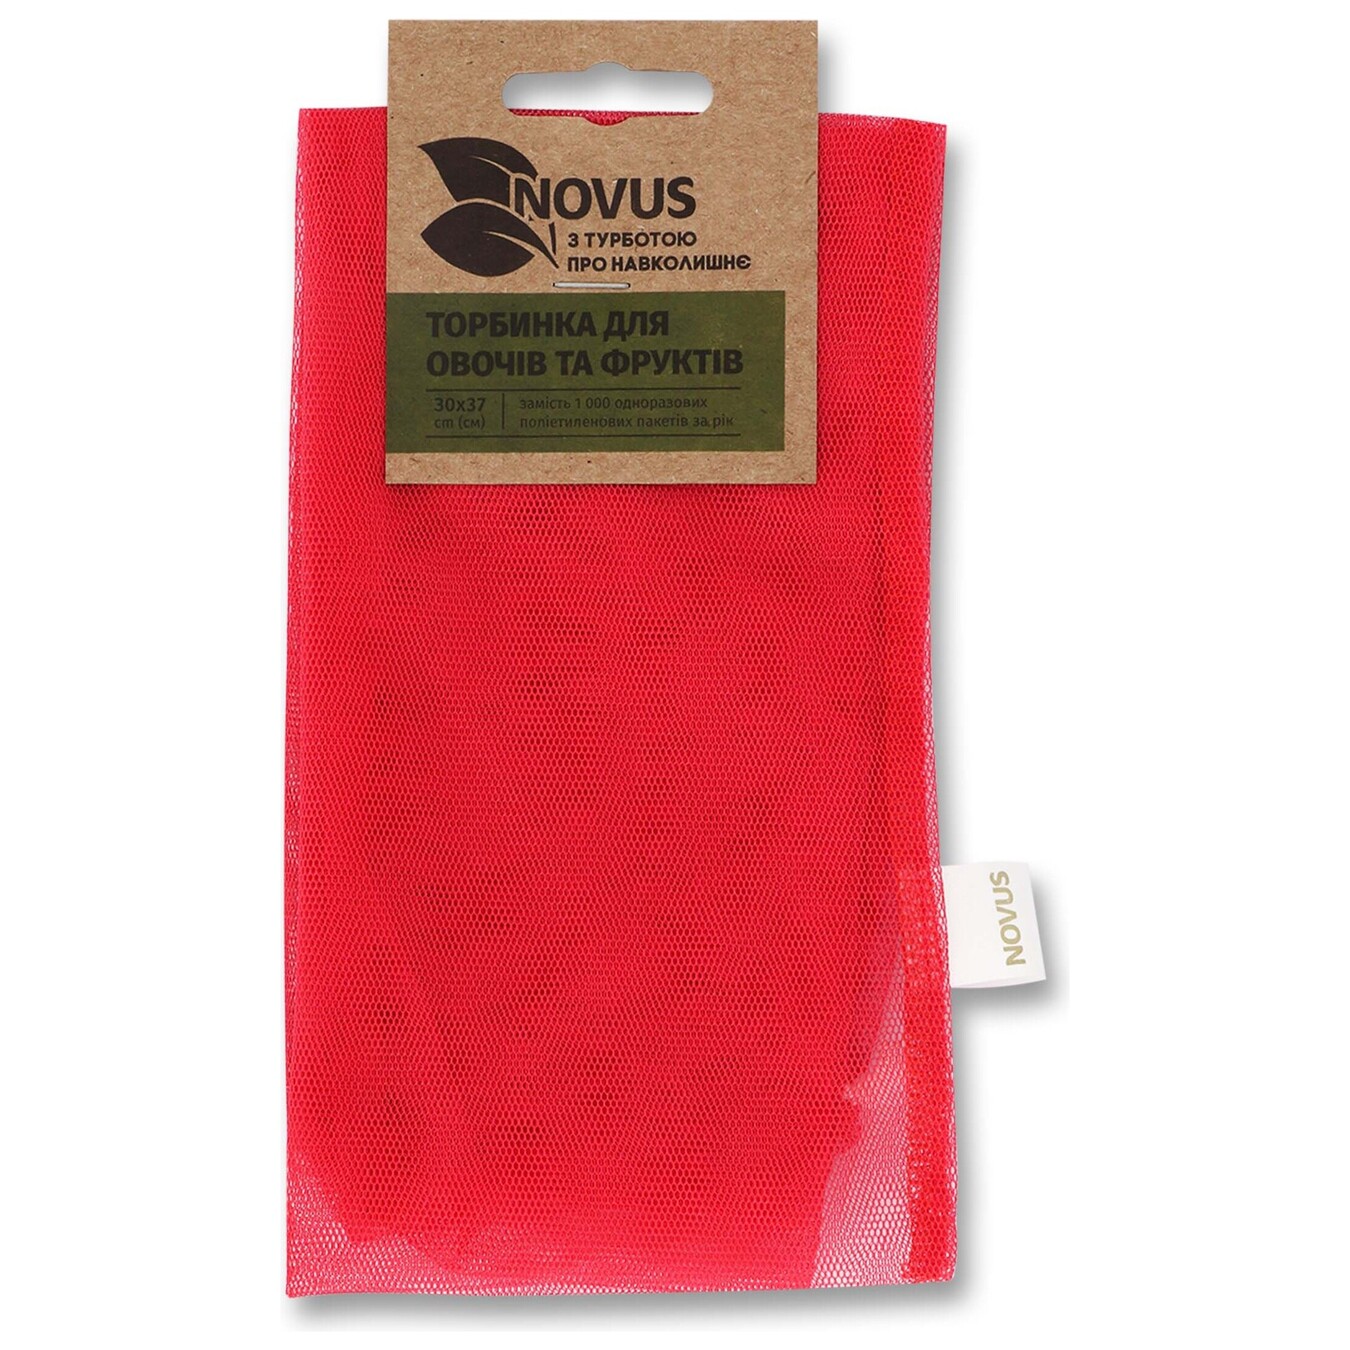 Novus For Fruits And Vegetables Bag